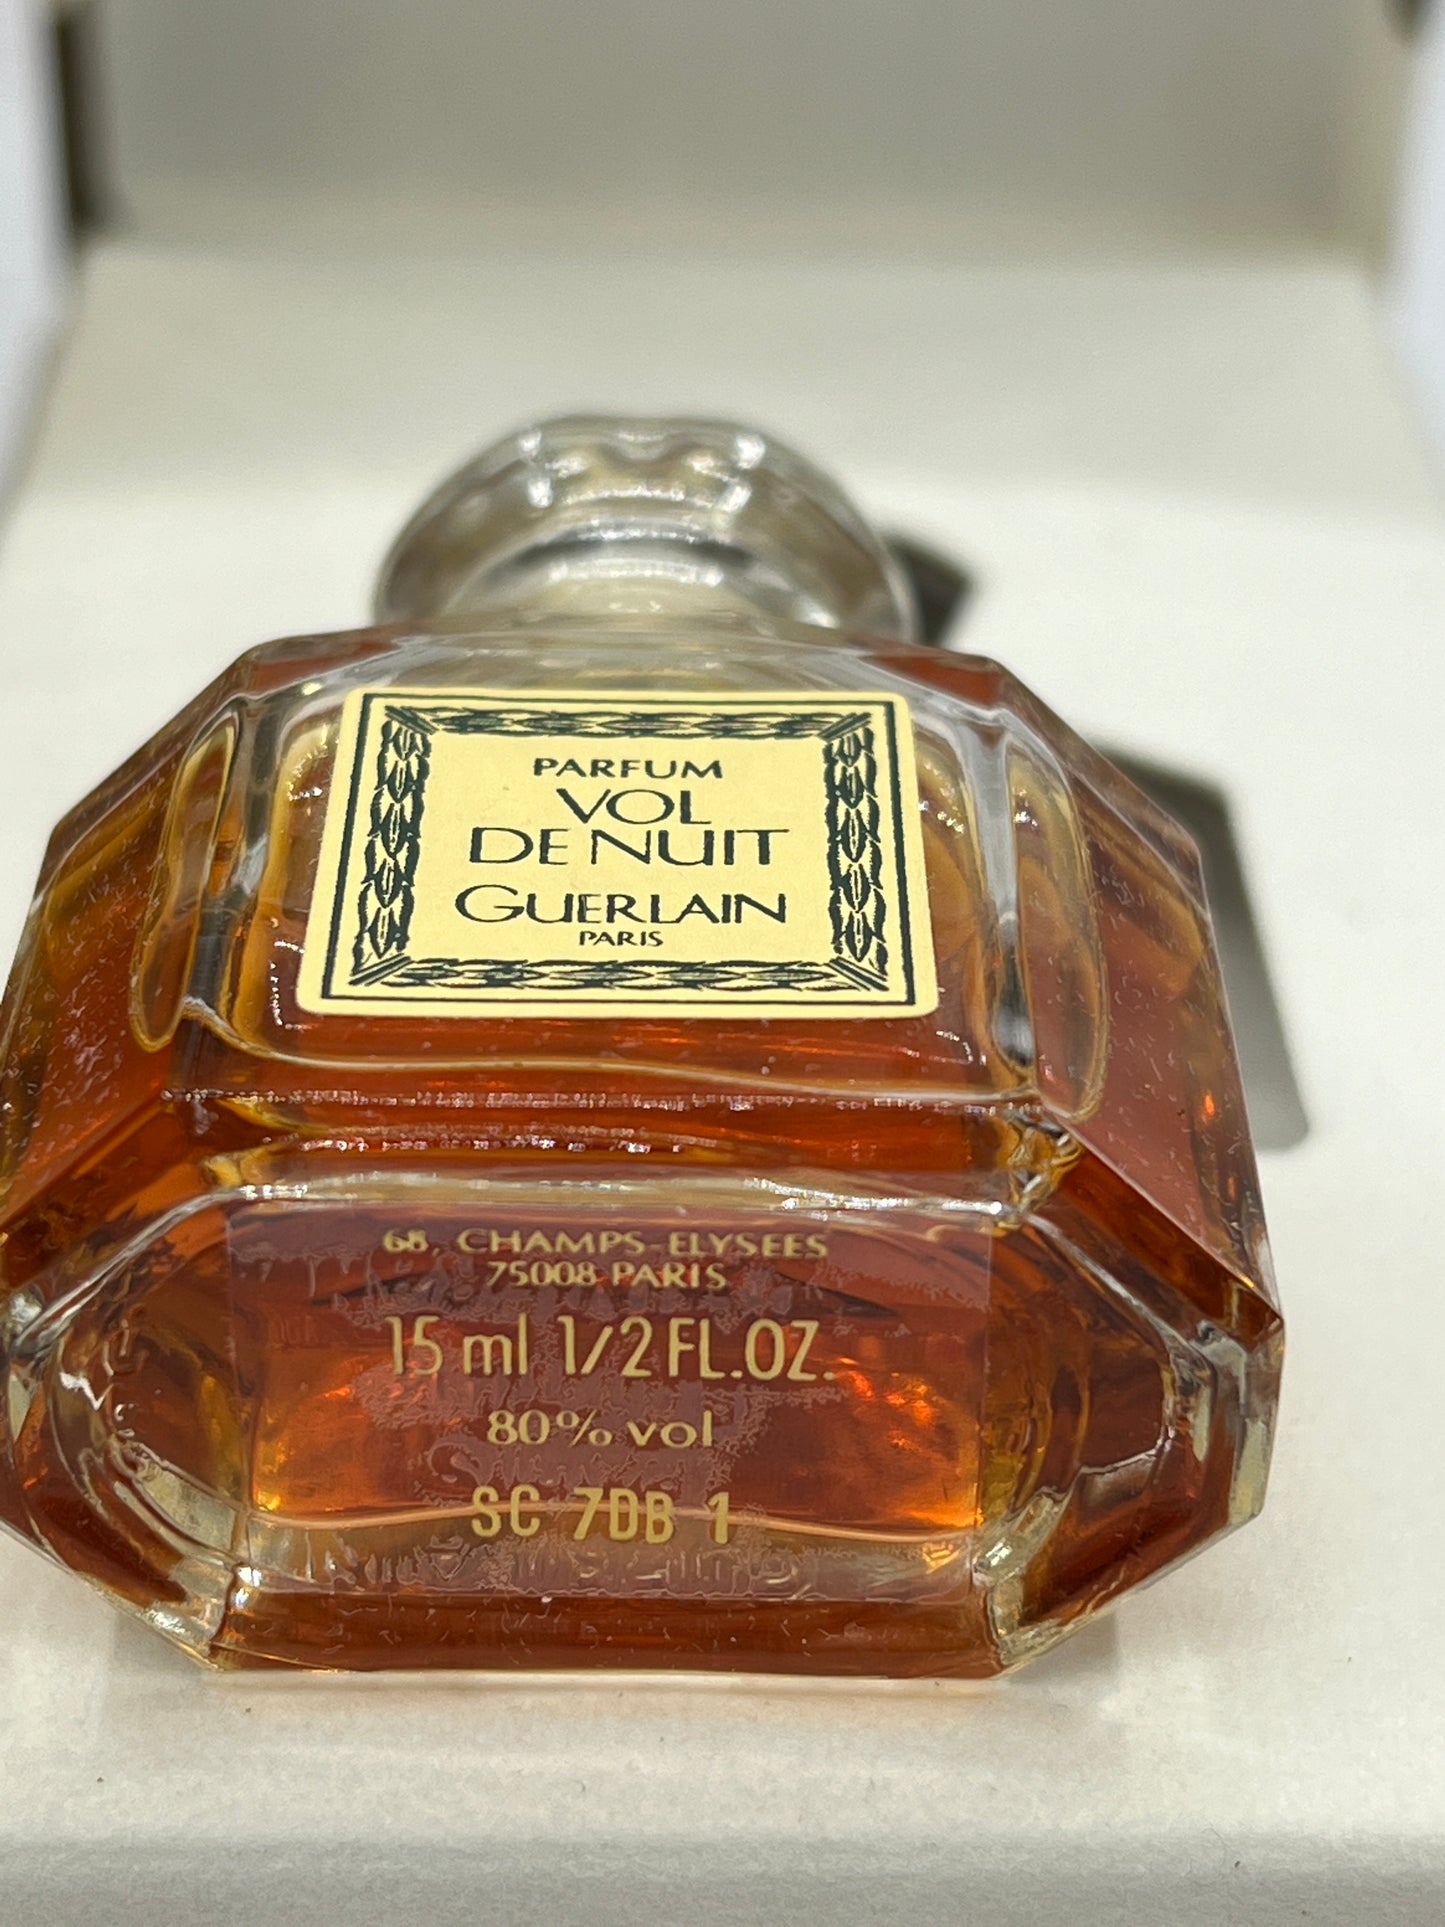 Rare Guerlain  Vol de nuit 15ml 1/2 oz Parfum Perfume - 010523-10